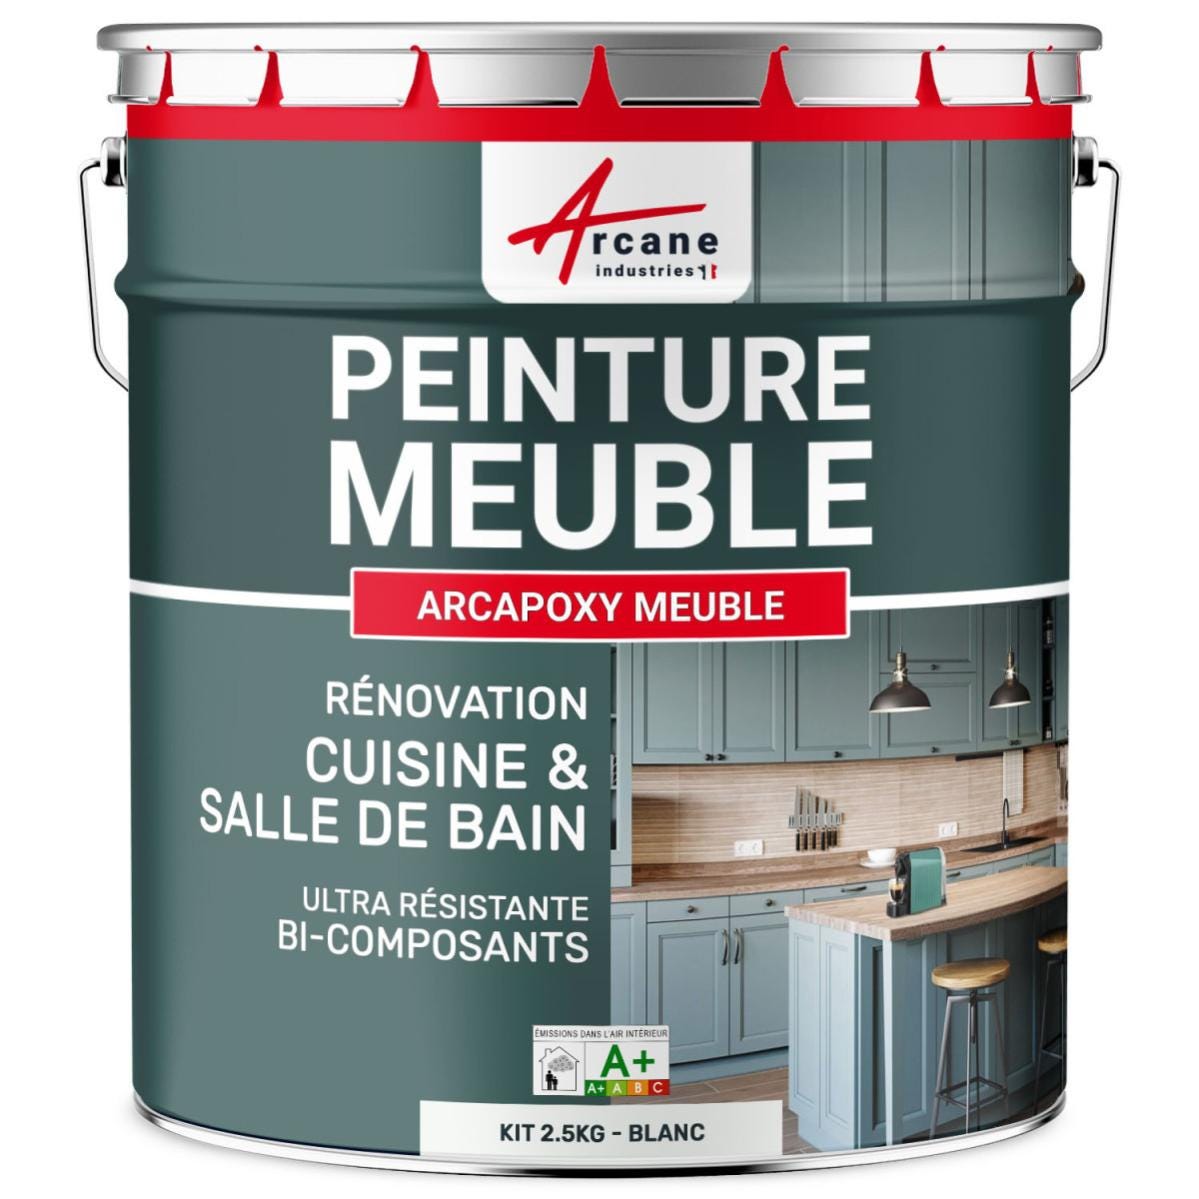 Peinture Meuble Cuisine, Salle de Bain - Résine ARCAPOXY MEUBLE - 2.5 kg (jusqu'à 30 m² en 2 couches) - Blanc - RAL 9003 - ARCANE INDUSTRIES 6